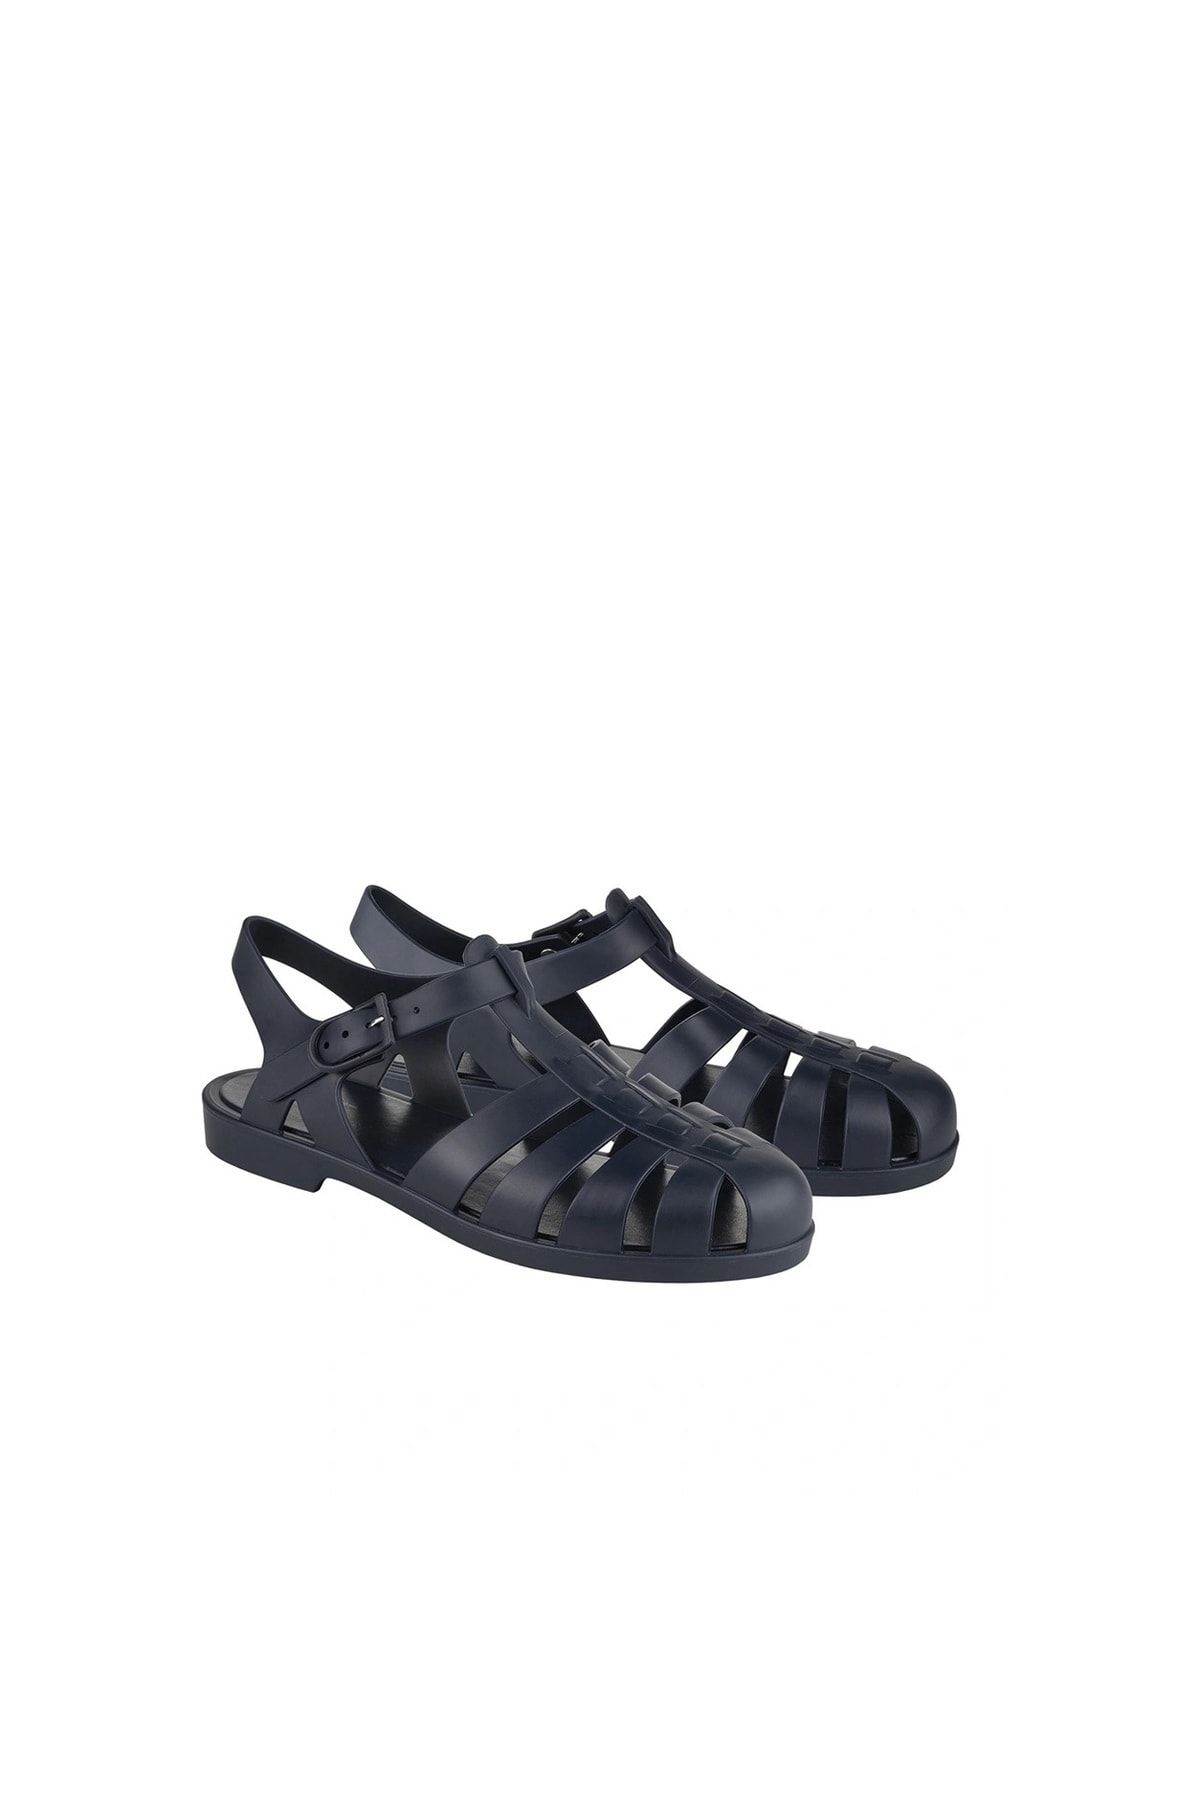 IGOR Biarritz Kadın Sandalet S10259-002